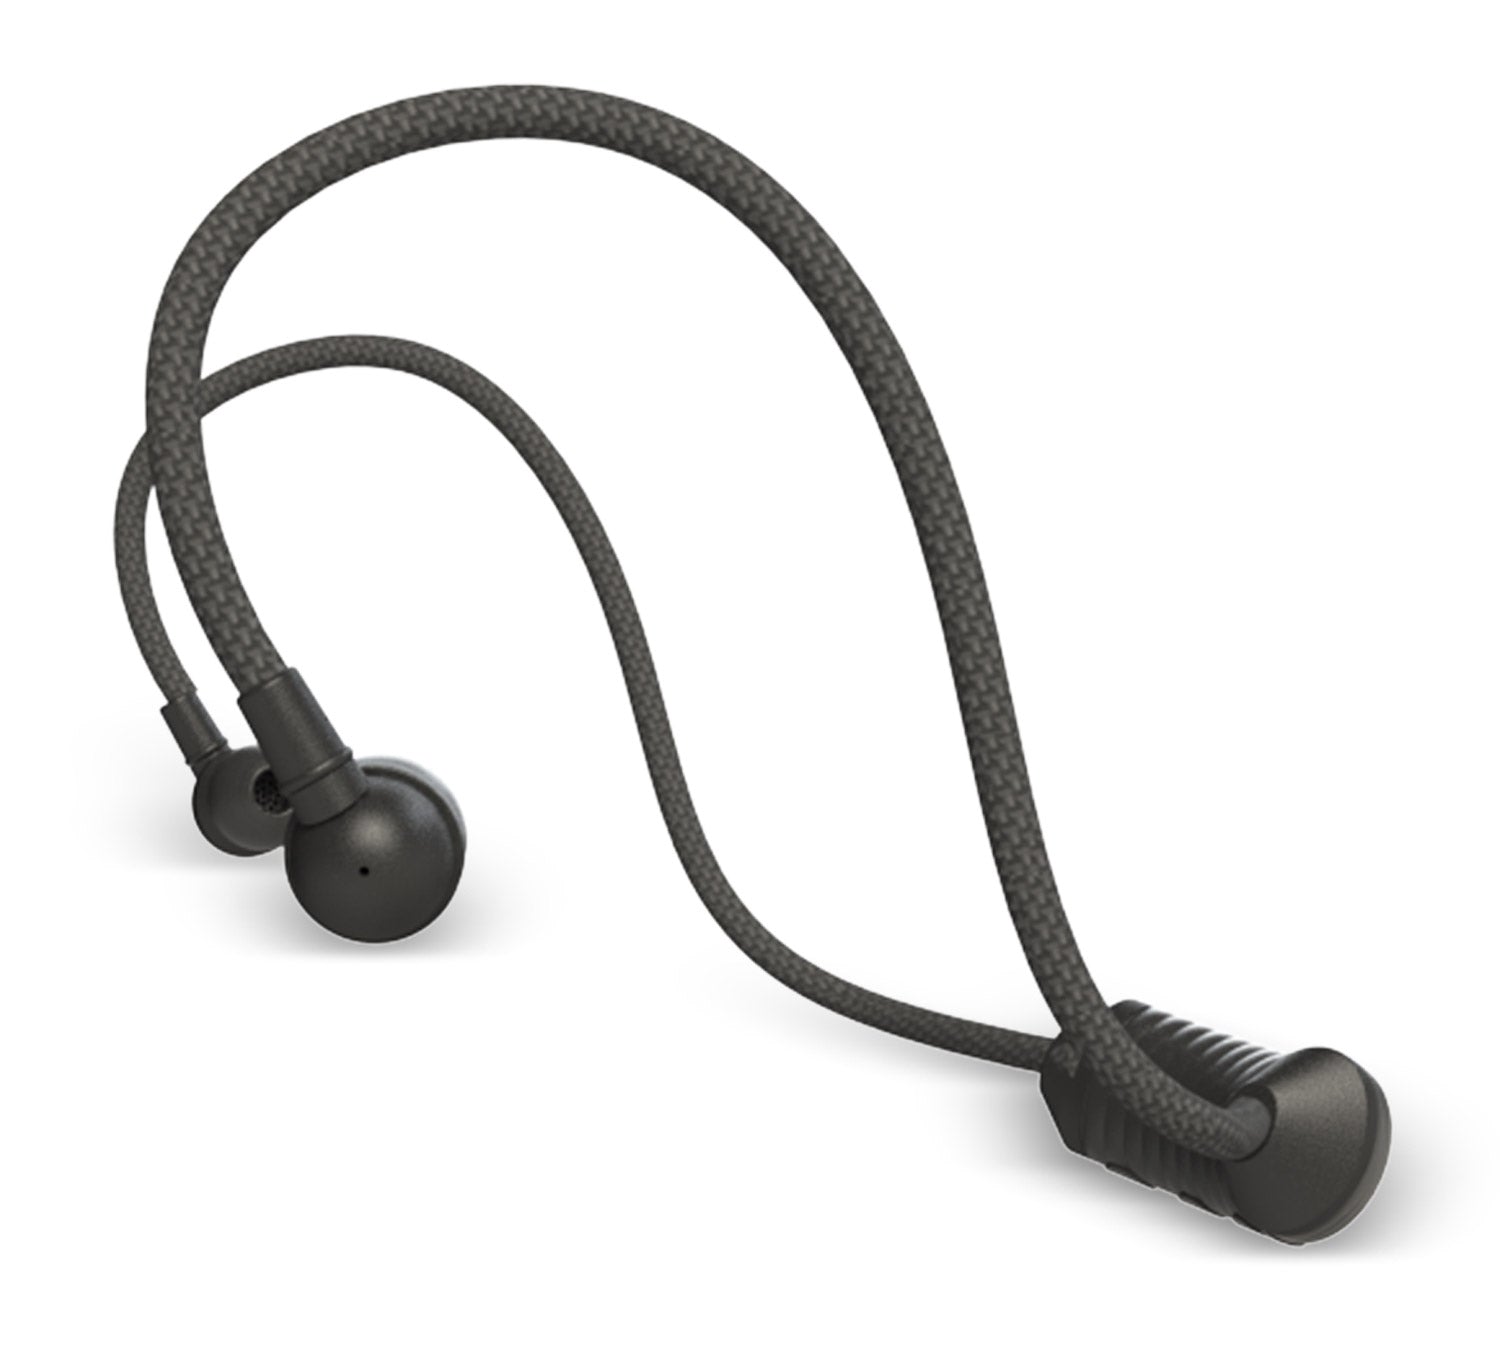 WRAPS Go: Wireless In-ear Headphones